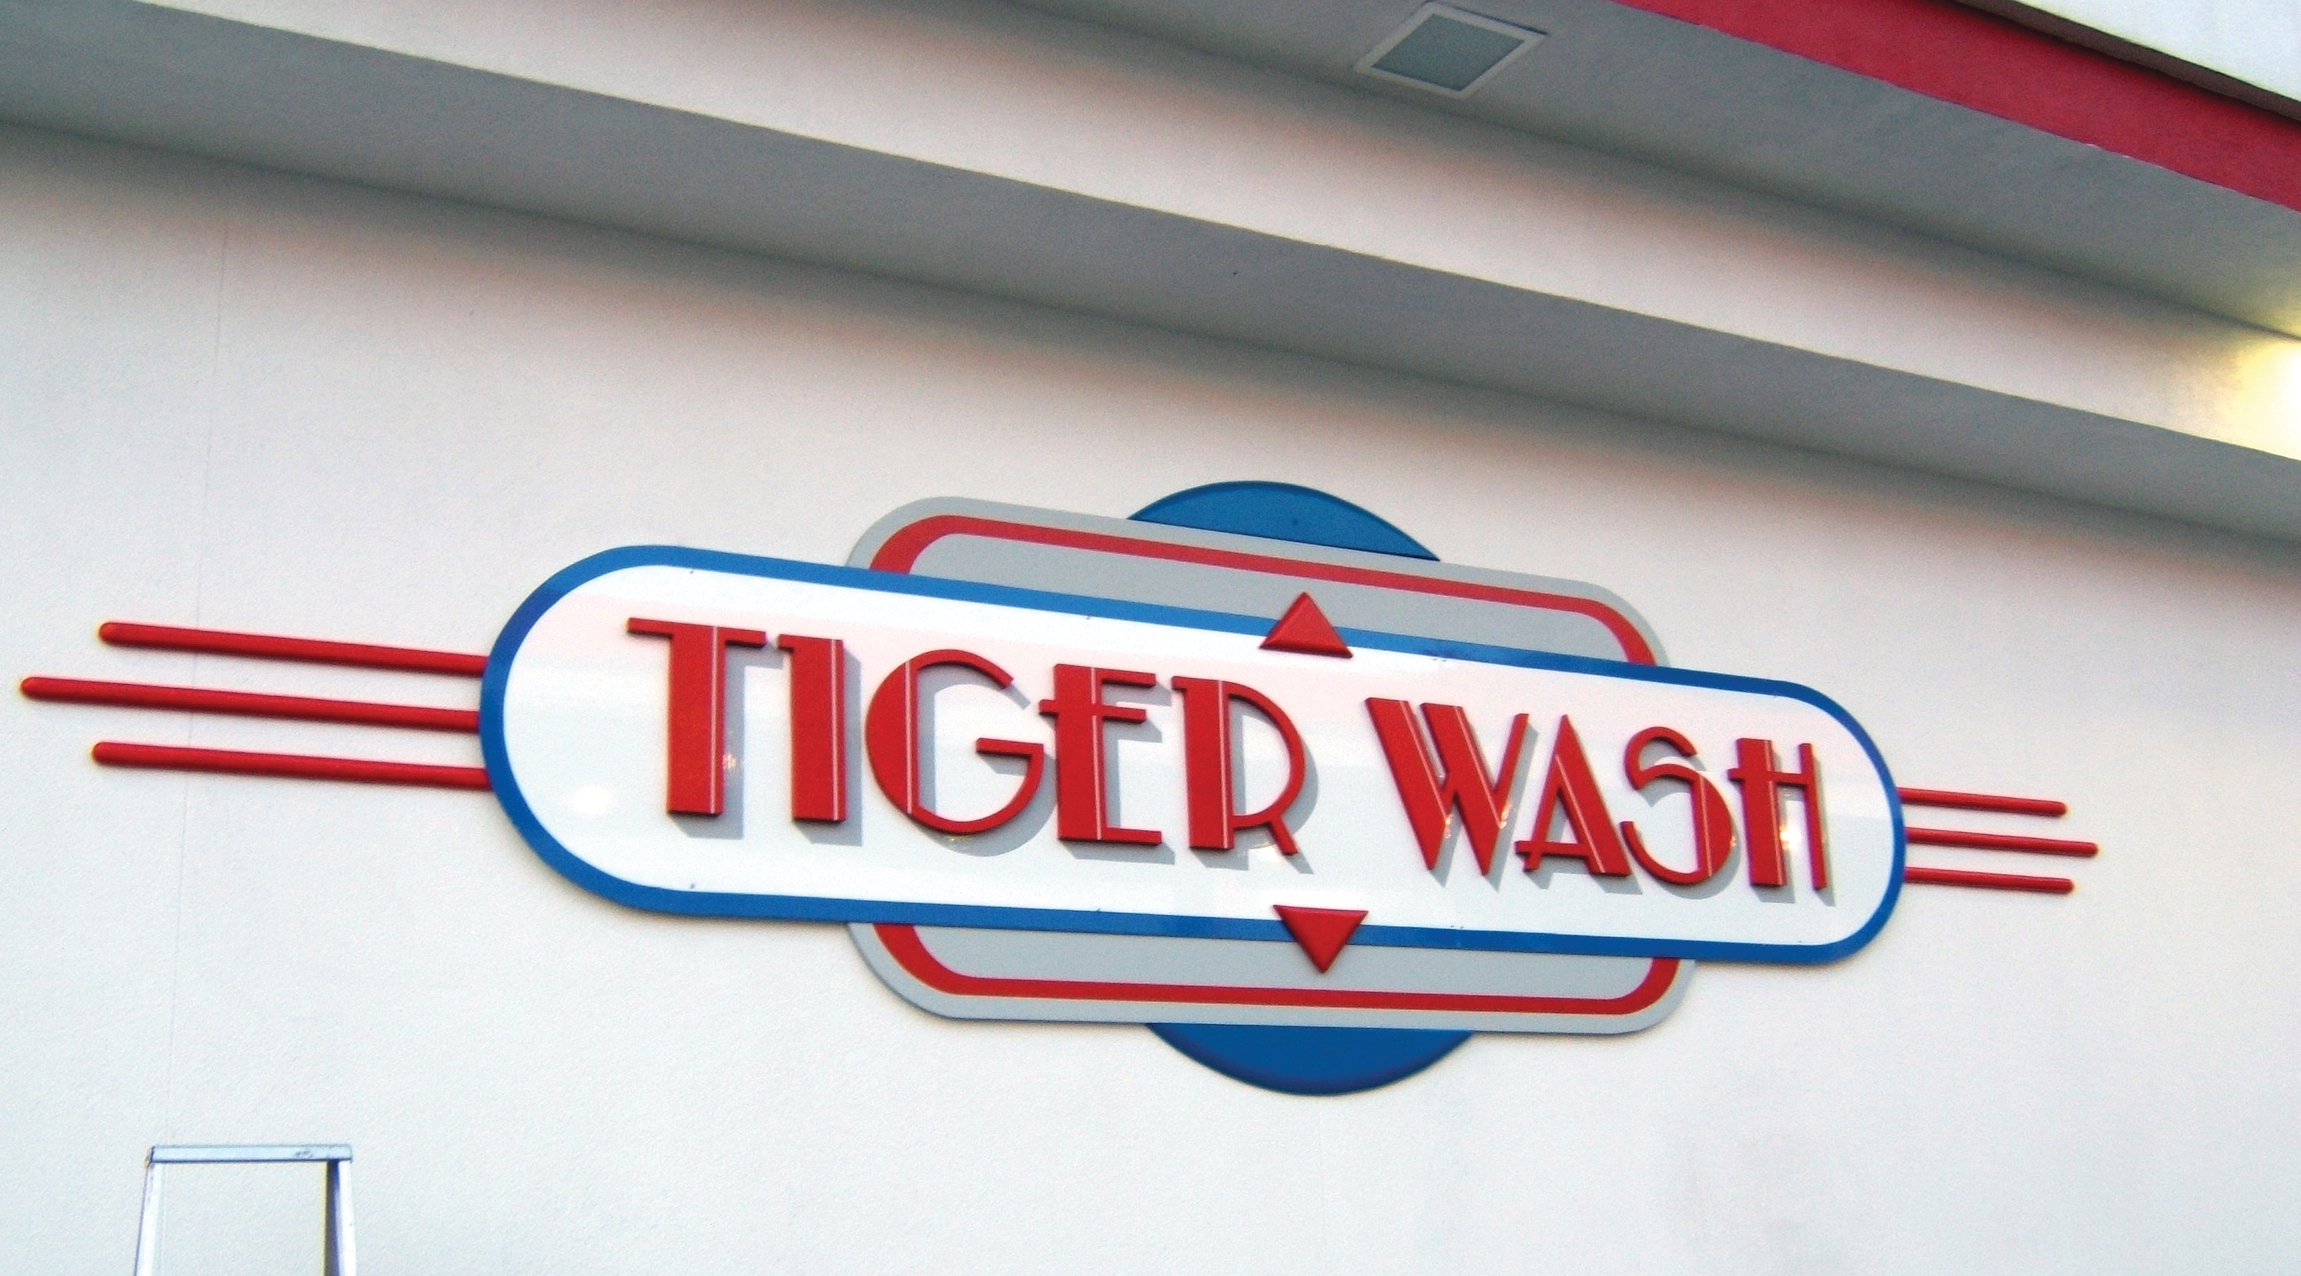 Tiger Wash Sign